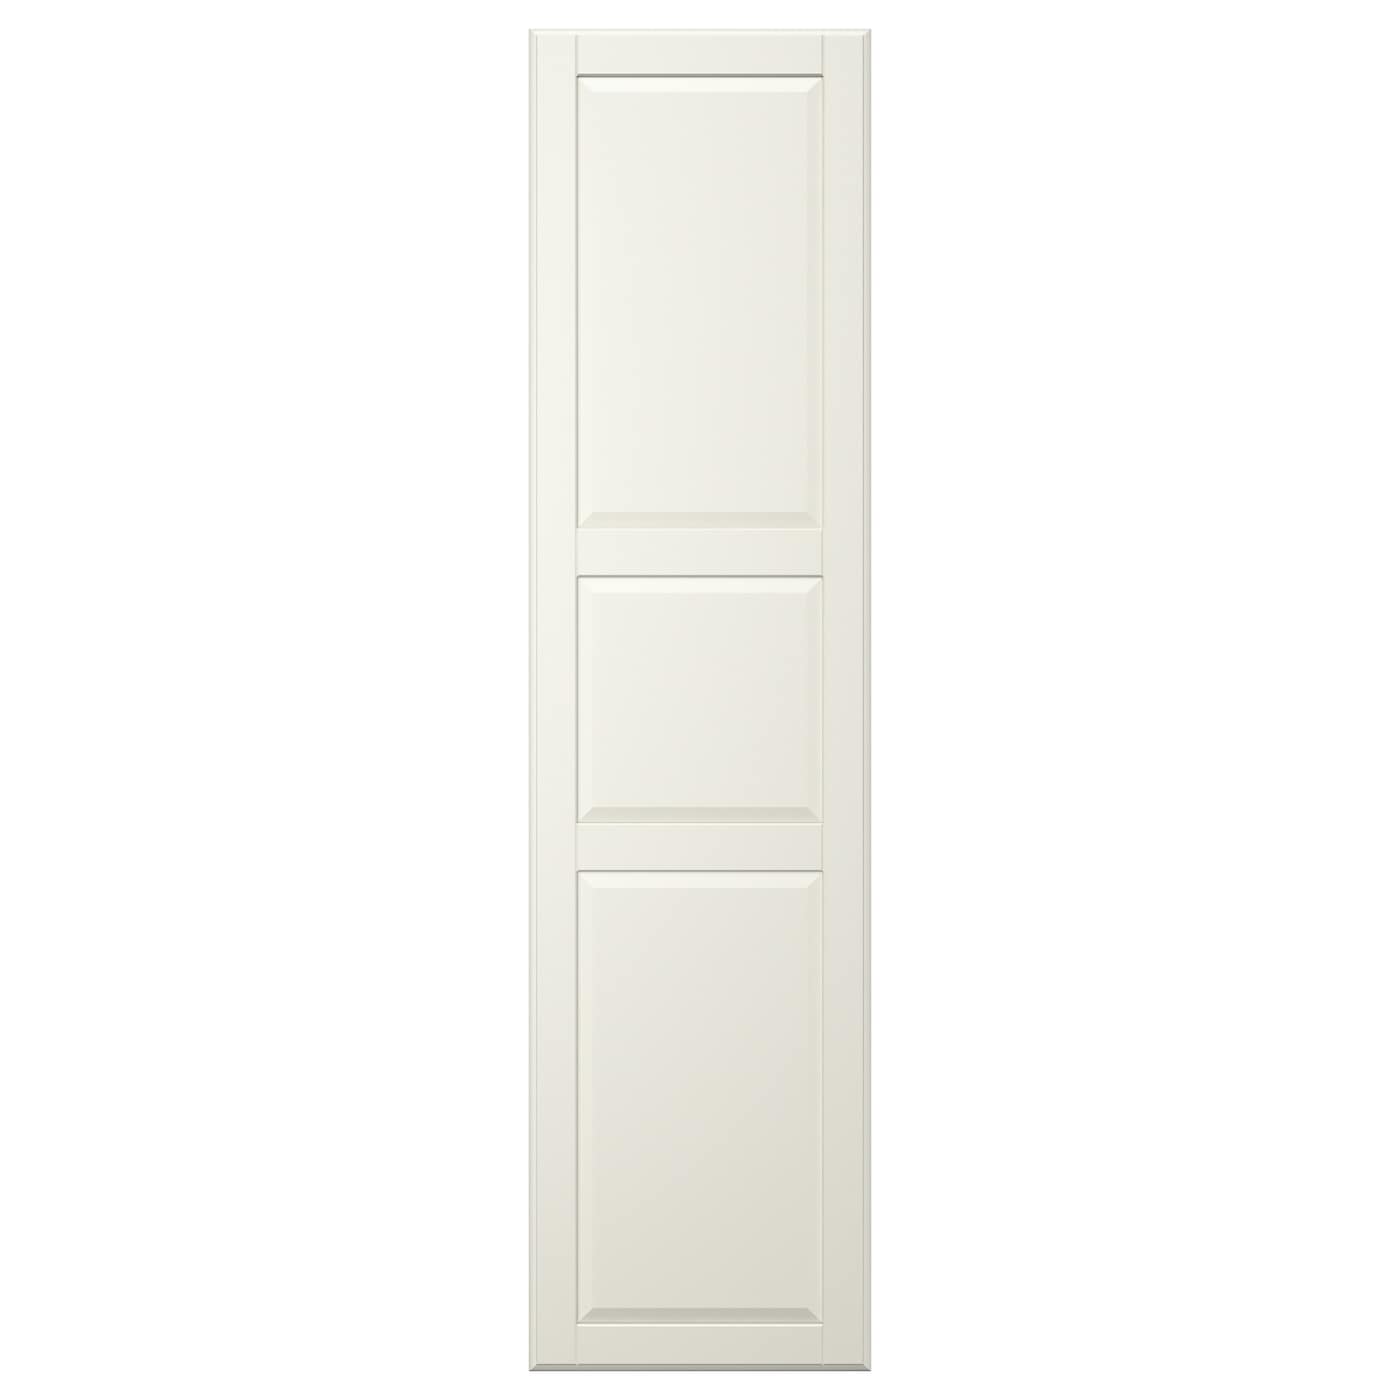 Дверь шкафа - TYSSEDAL IKEA/ ТИССЕДАЛЬ ИКЕА, 50x195 см, белый